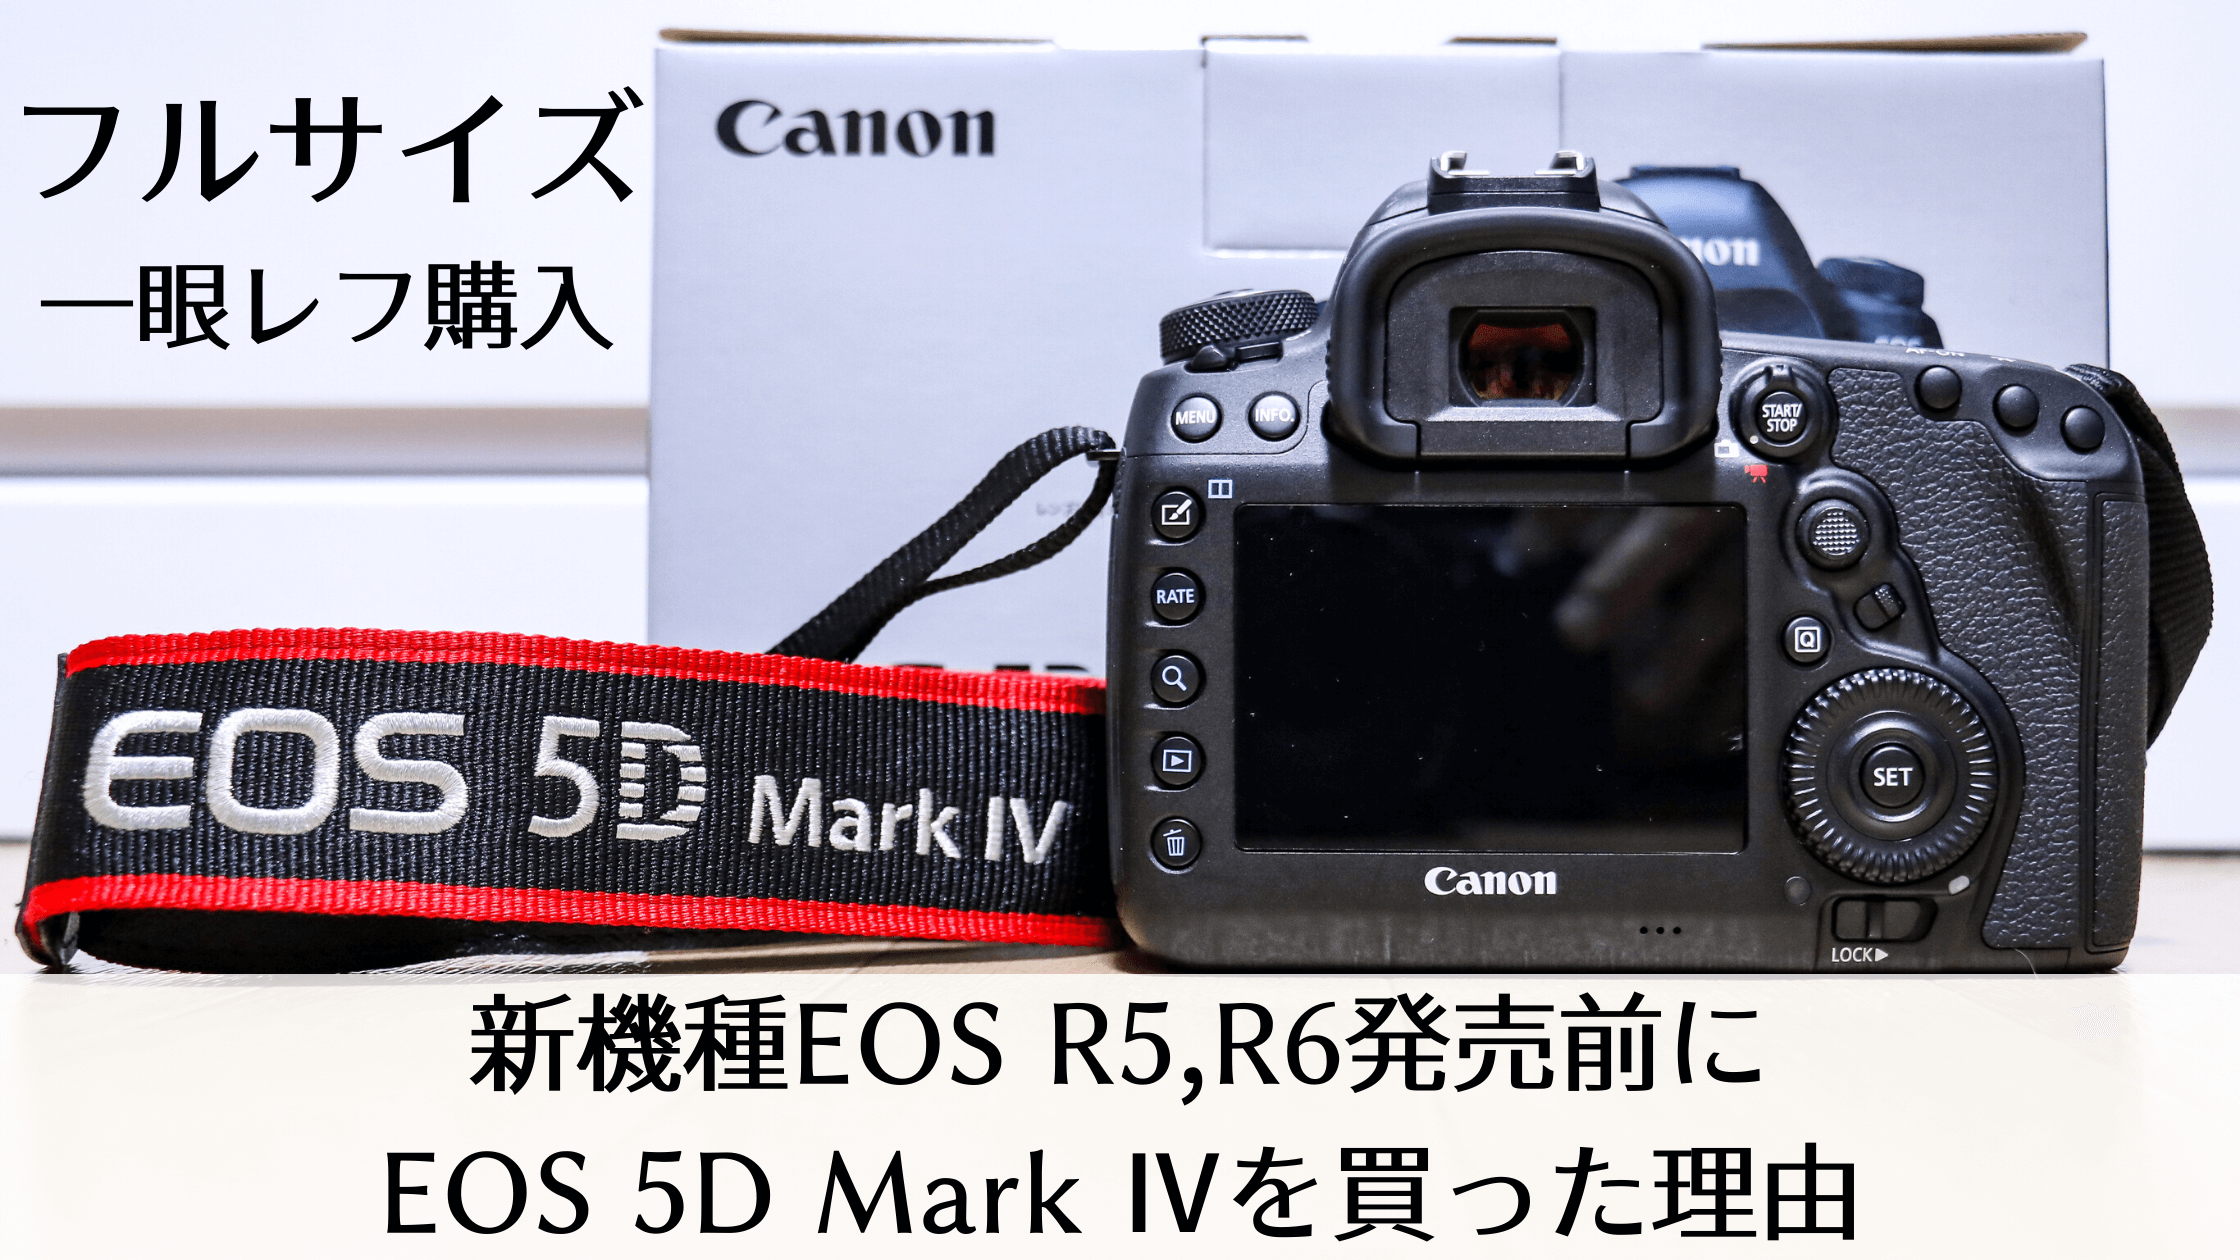 キャノンフルサイズ一眼レフカメラ購入】新機種EOS R5,R6発売前にEOS 